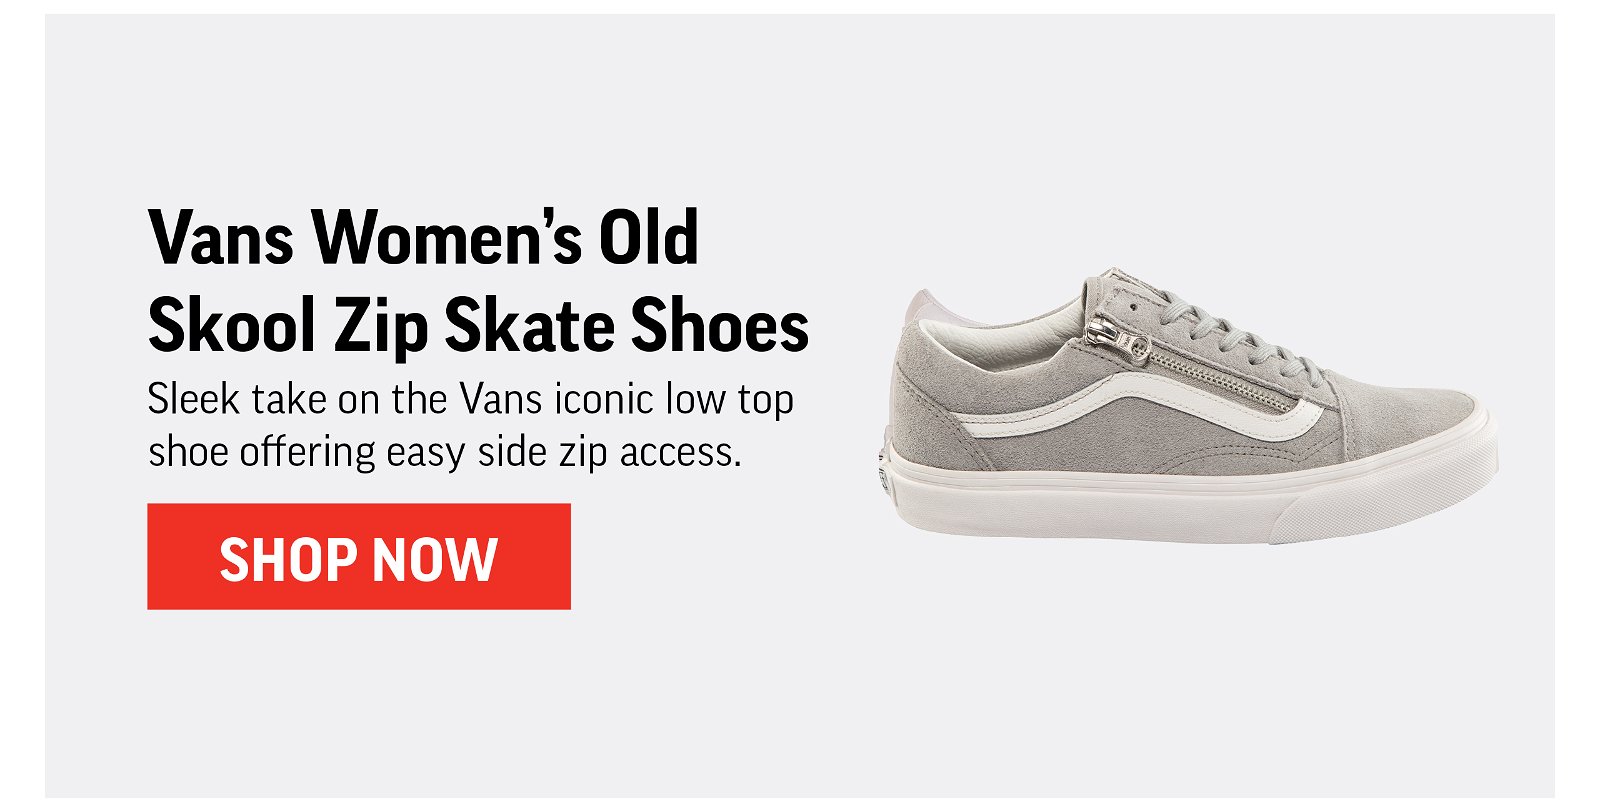 Vans Women's Old Skool Zip Skate Shoes